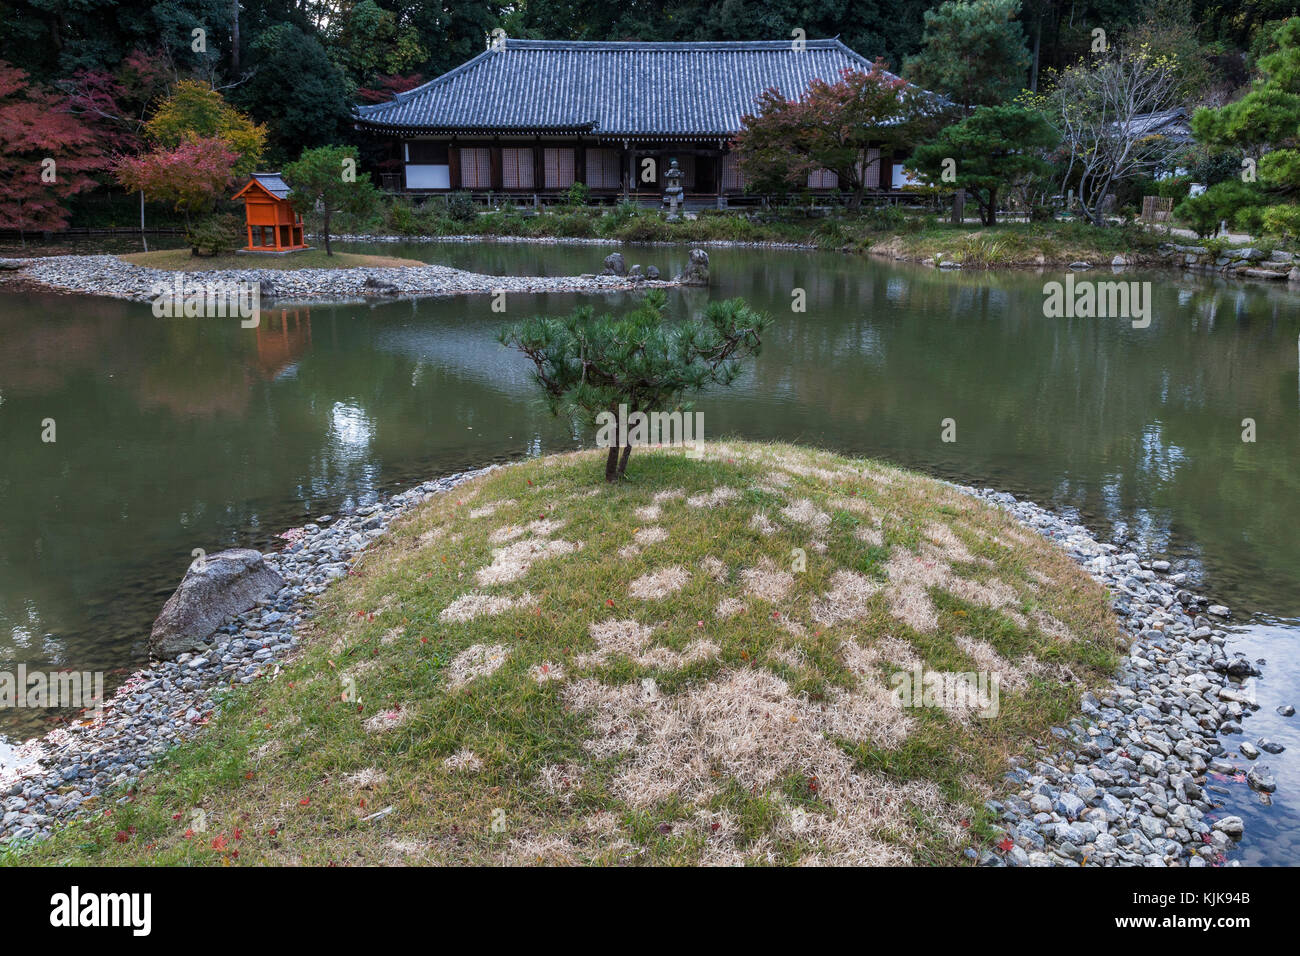 Joruri-ji se encuentra idealmente ubicado en las colinas de nara y la única existente era Heian amida hall con nueve imágenes de amida y los nueve niveles de Foto de stock